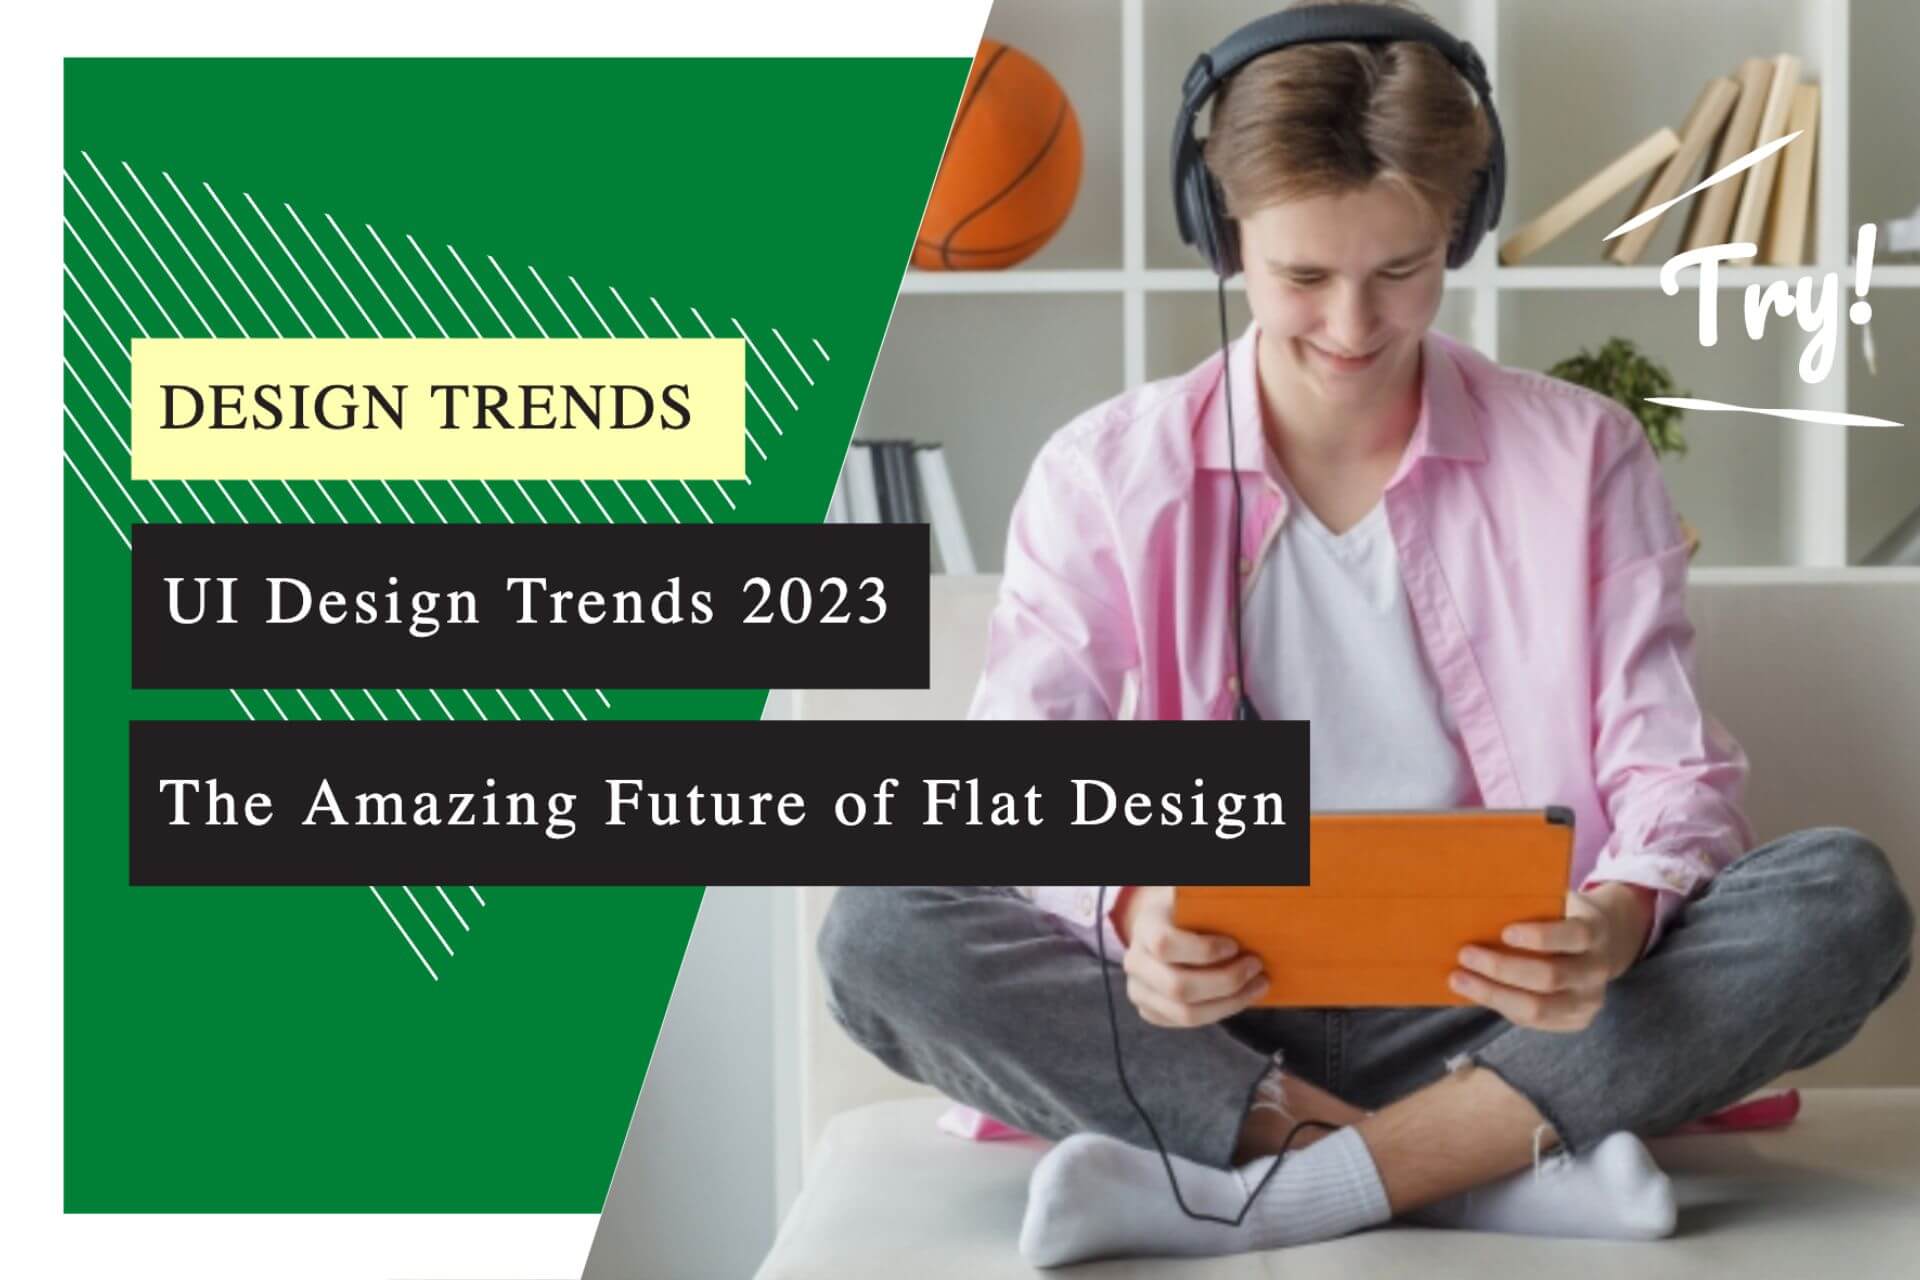 UI Design Trends 2023: The Amazing Future of Flat Design